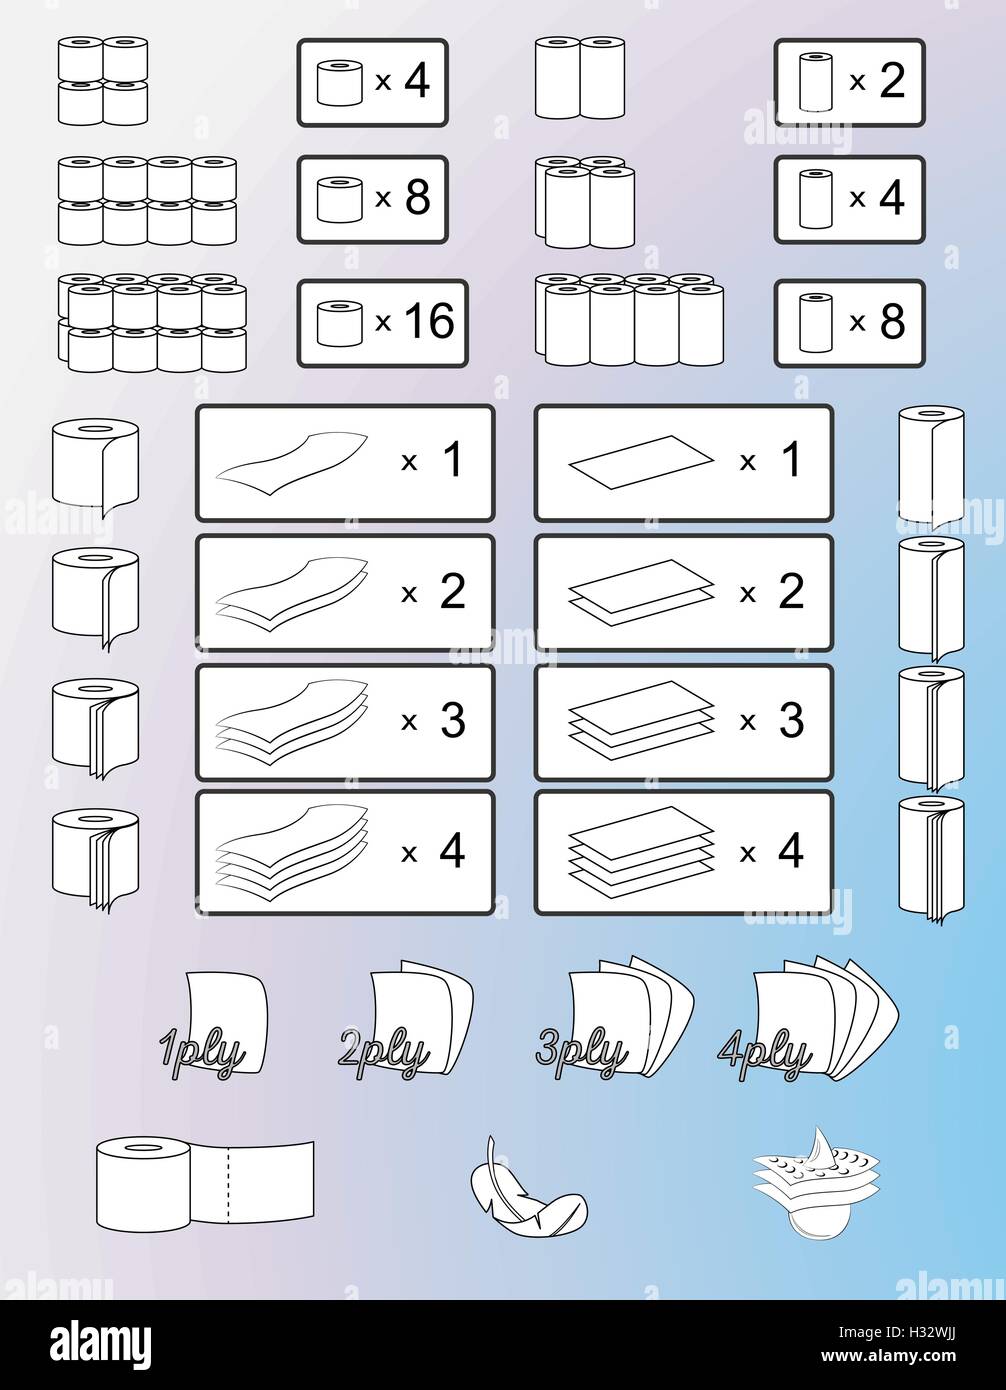 Satz von Toilettenpapier und Papierhandtücher, Verpackungen, Schilder, Symbole und Ikonen. Isolierte Darstellung. Vektor. Stock Vektor